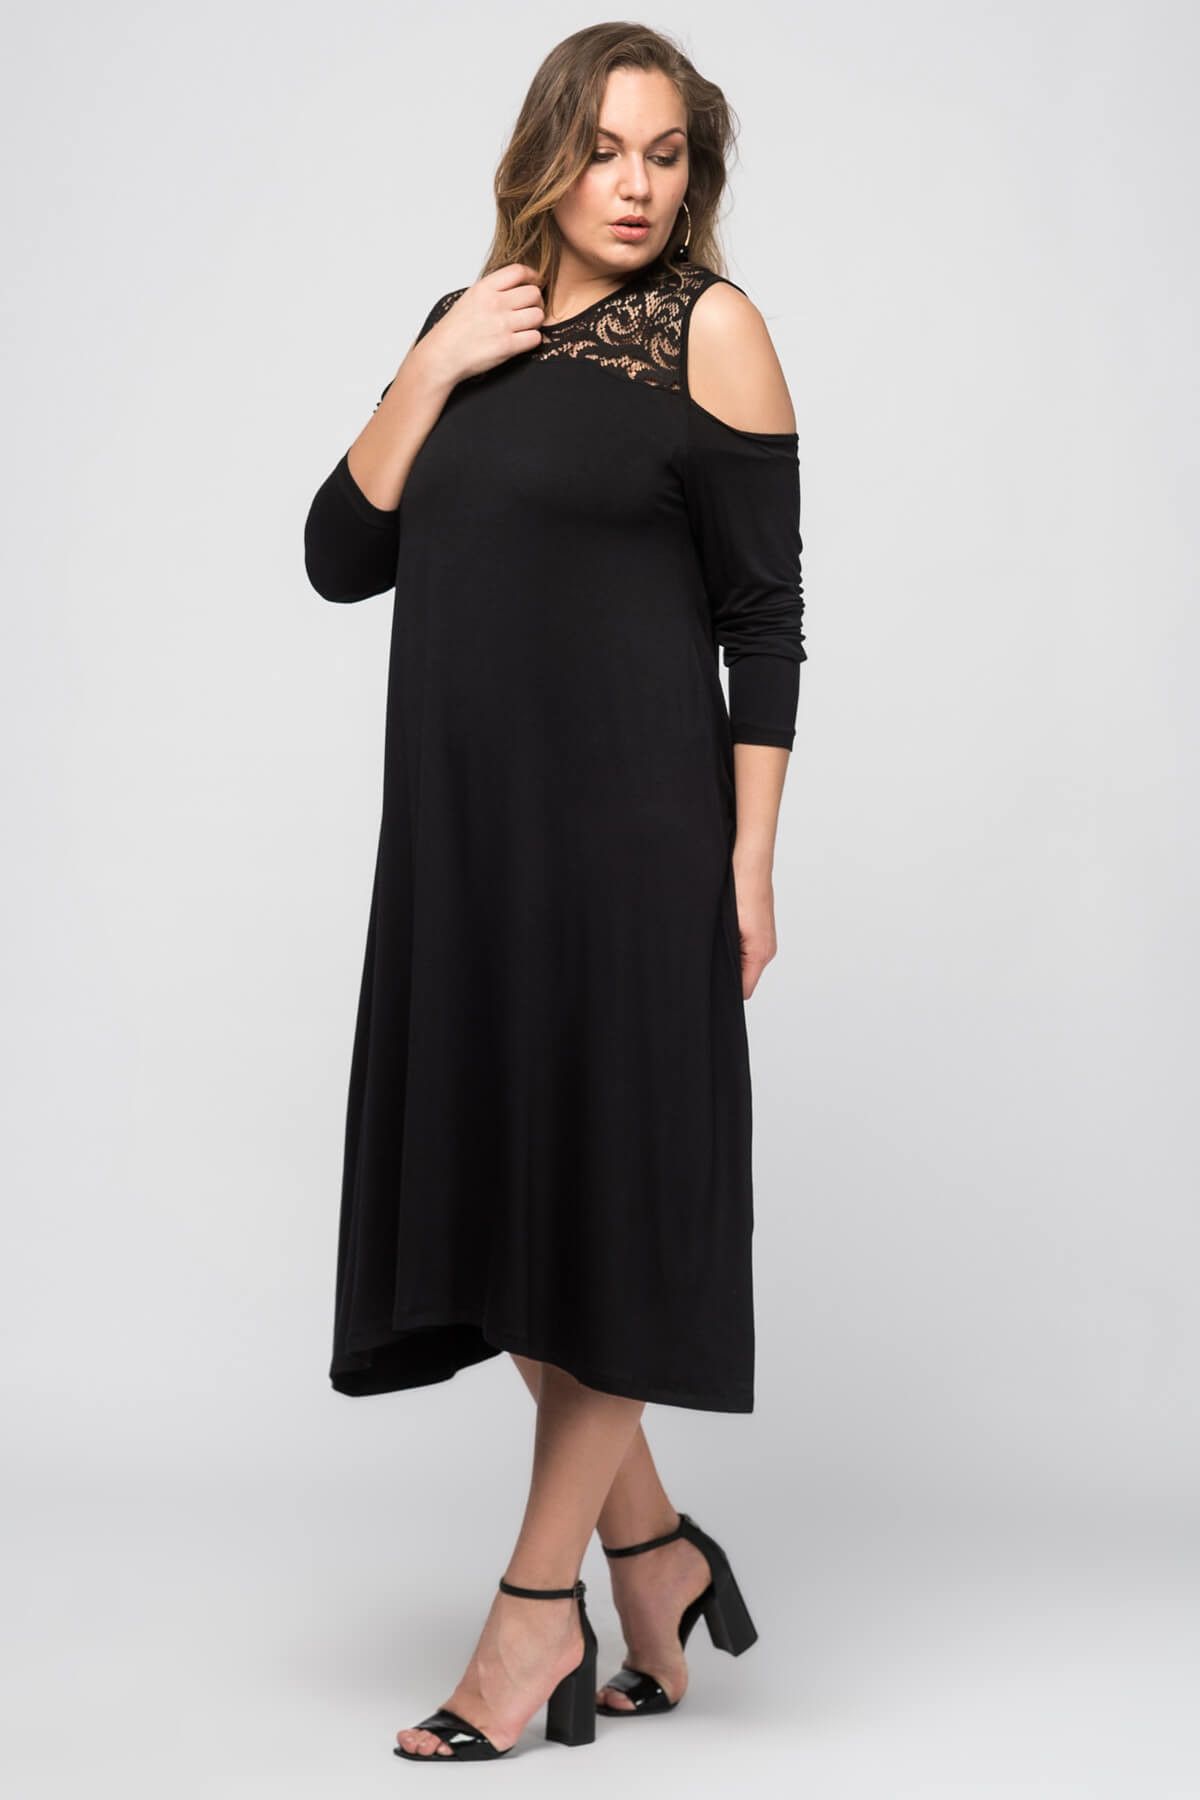 Curvy Kadın Siyah Omuz Detaylı Dantelli Elbise VLT0010